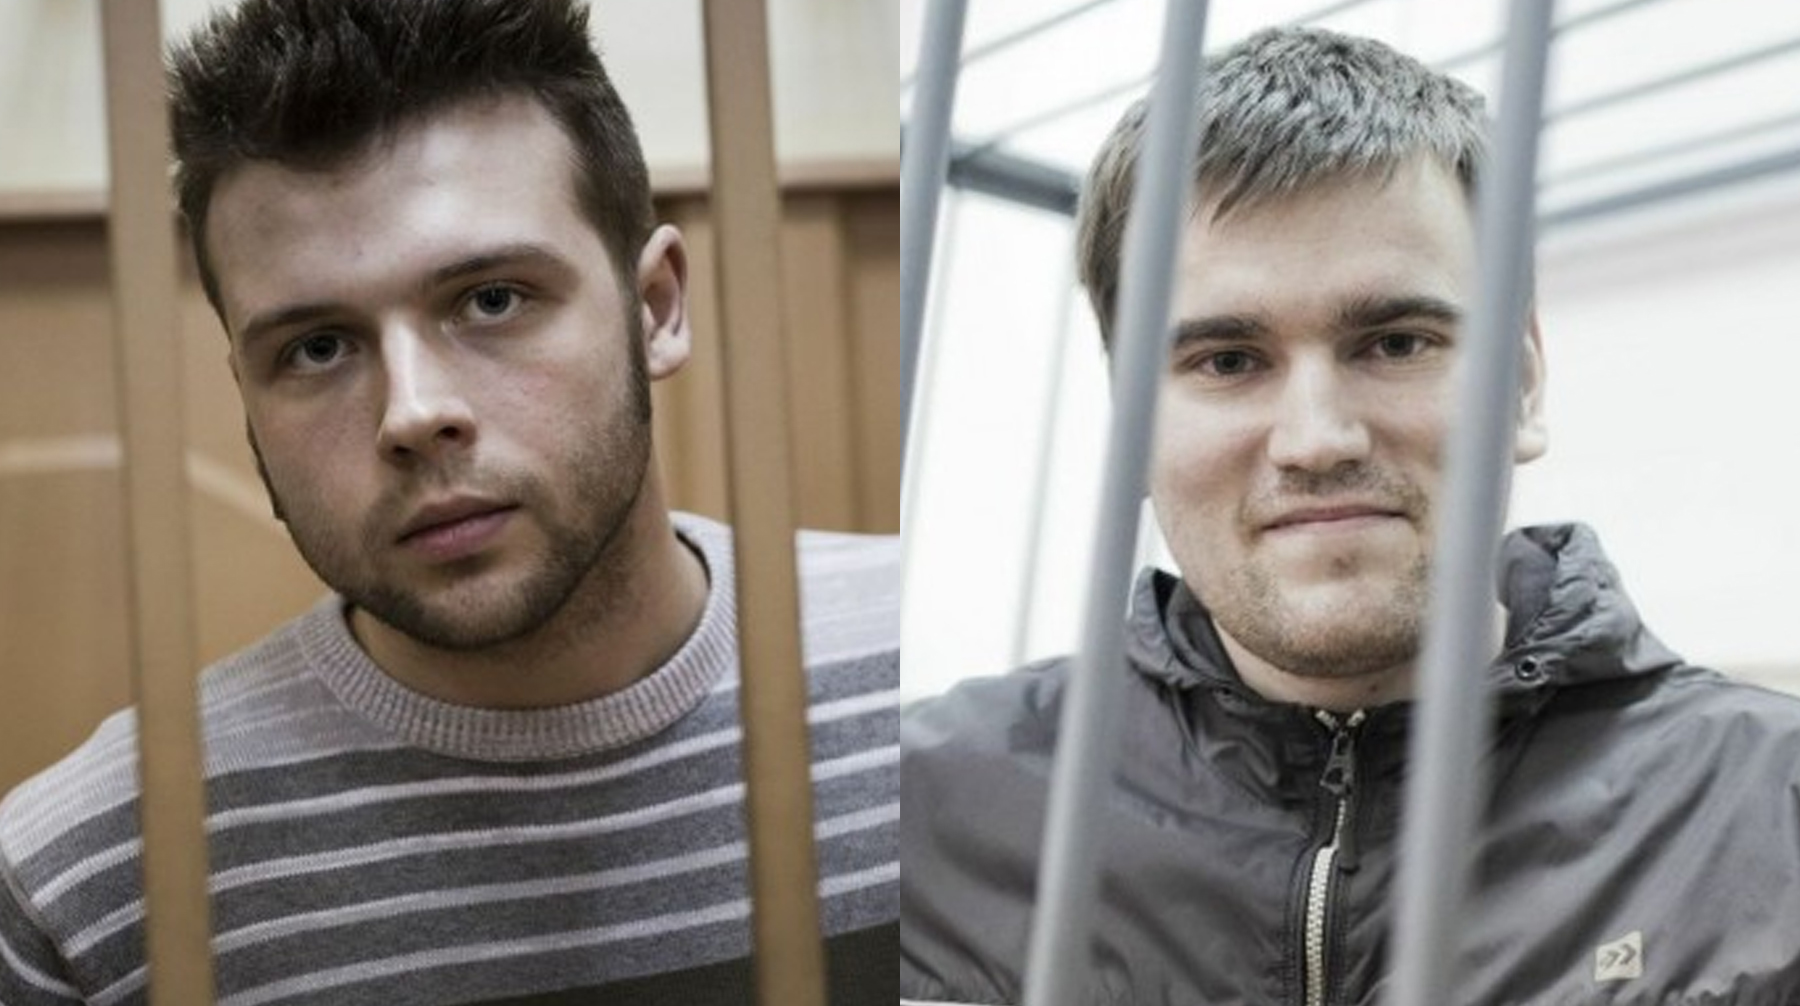 Суд признал преследование Ильи Гущина и Алексея Гаскарова нарушением их прав Илья Гущин (слева) и Алексей Гаскаров (справа)